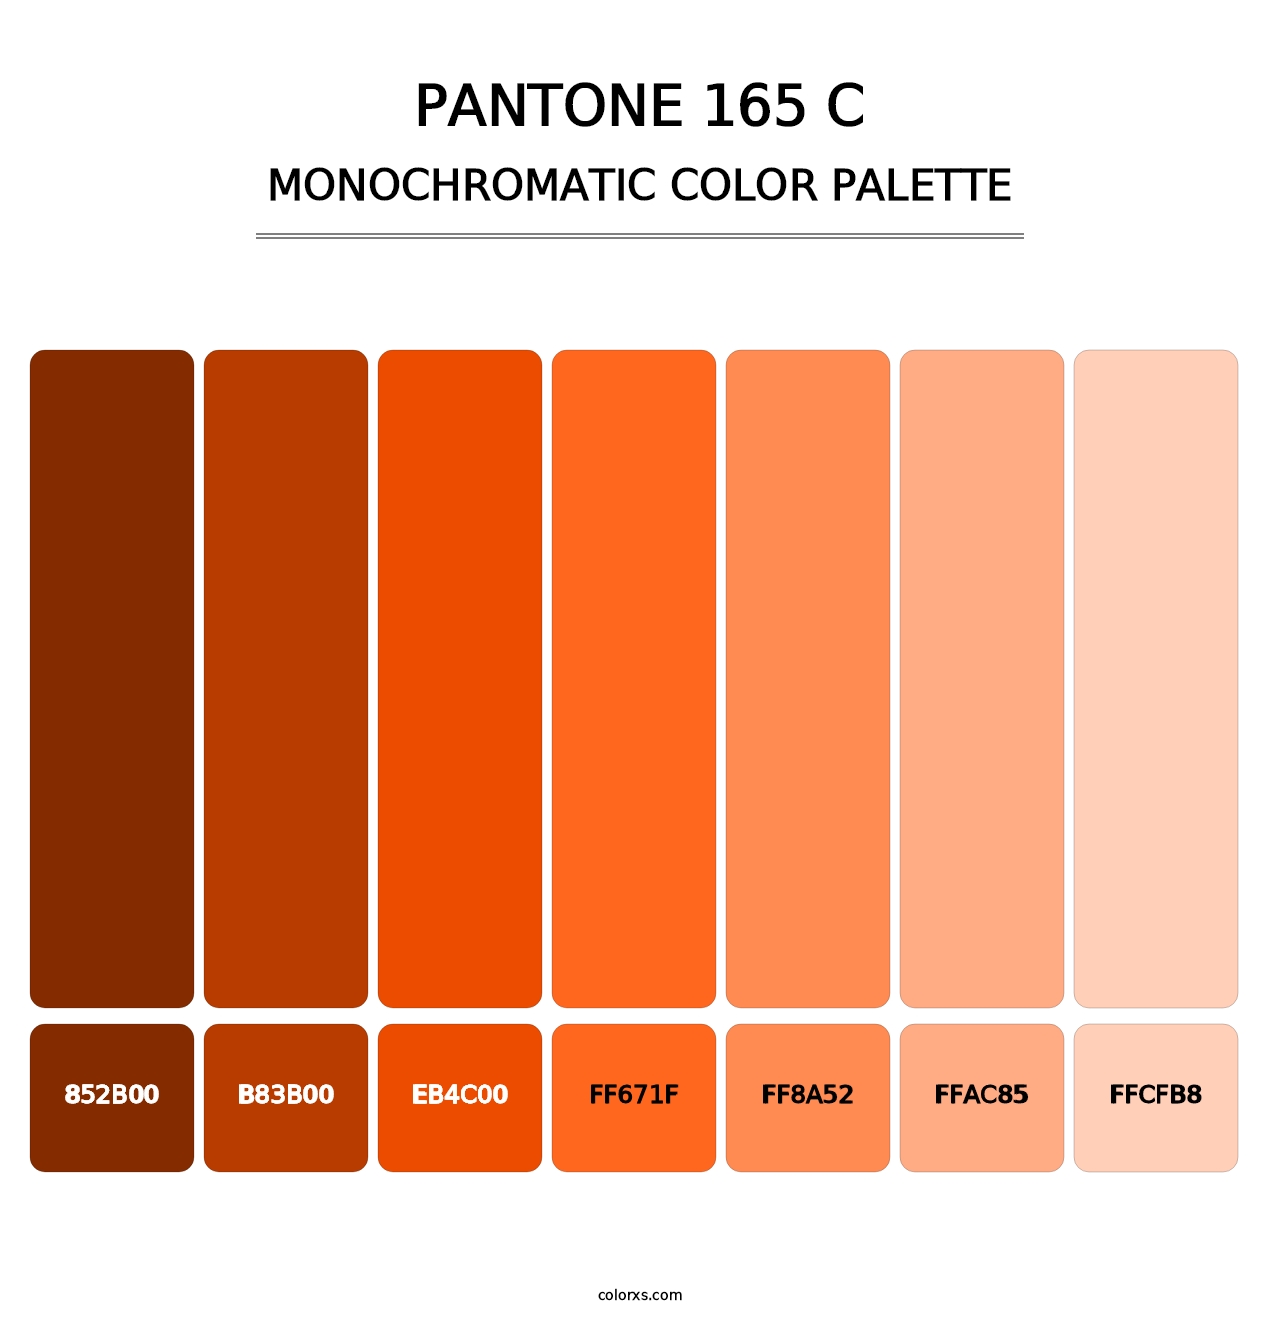 PANTONE 165 C - Monochromatic Color Palette